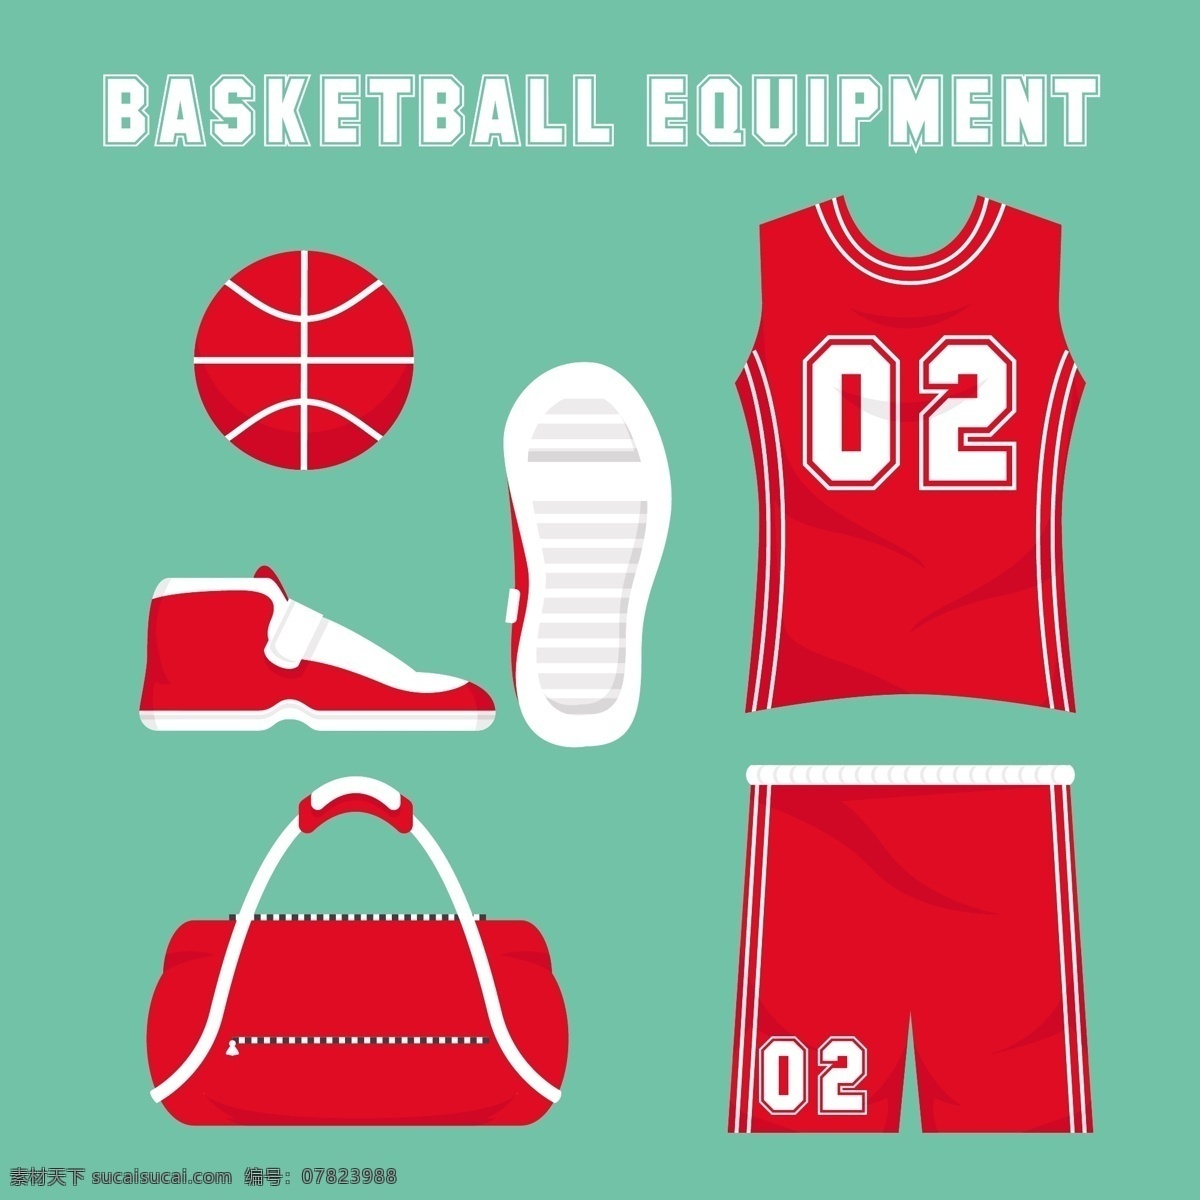 平篮球设备 运动 健身 篮球 红 平 包 衣服 游戏 队 网球 t恤 球 篮 裤子 元素 设备 环 青色 天蓝色